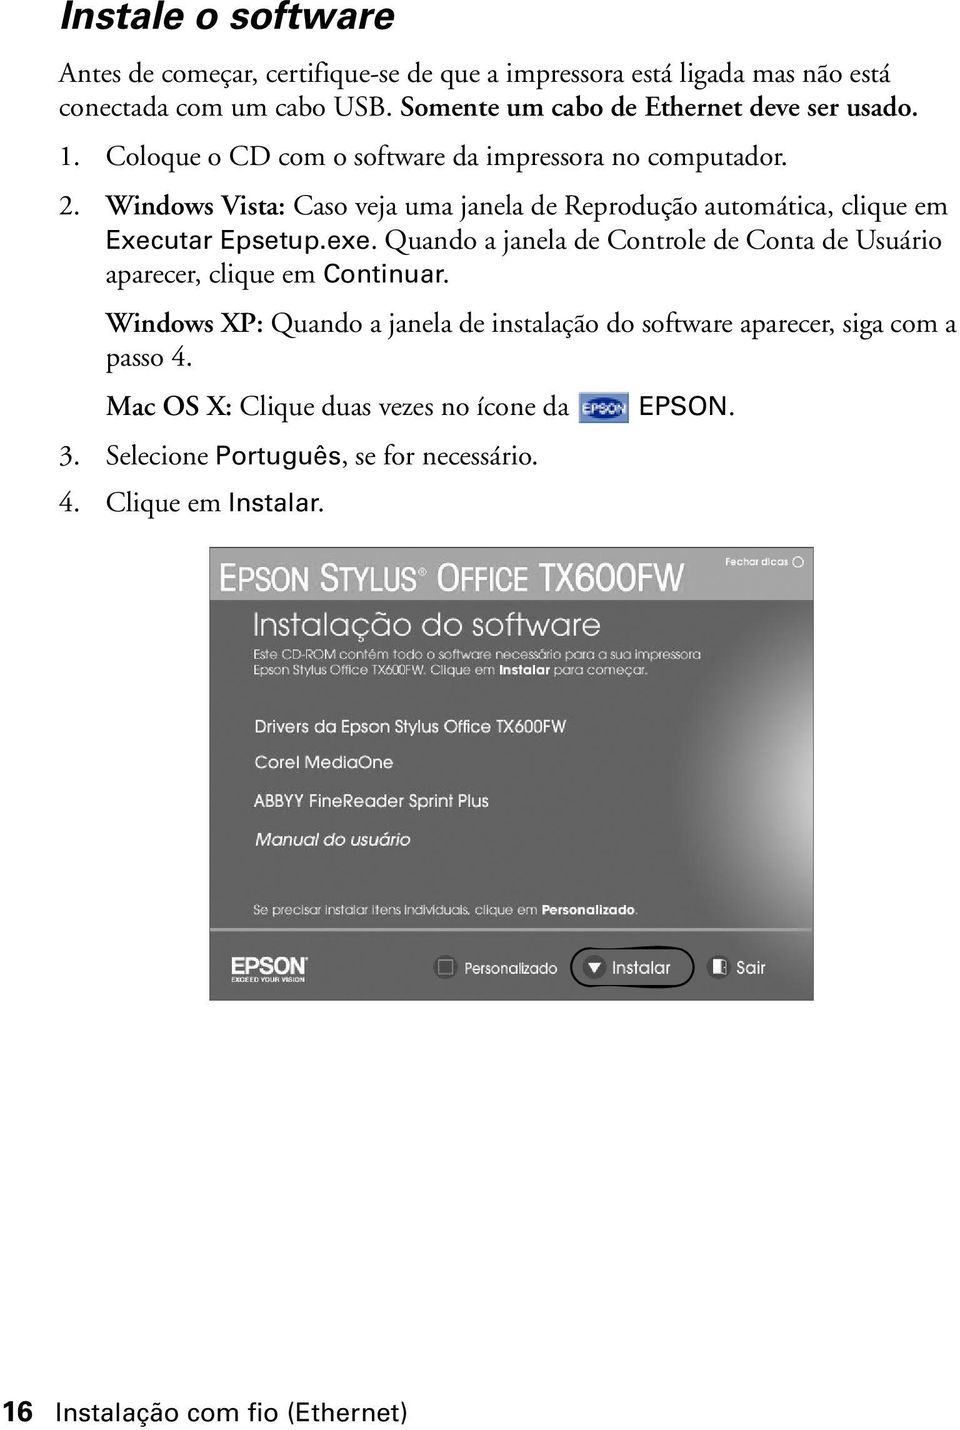 Windows Vista: Caso veja uma janela de Reprodução automática, clique em Executar Epsetup.exe.